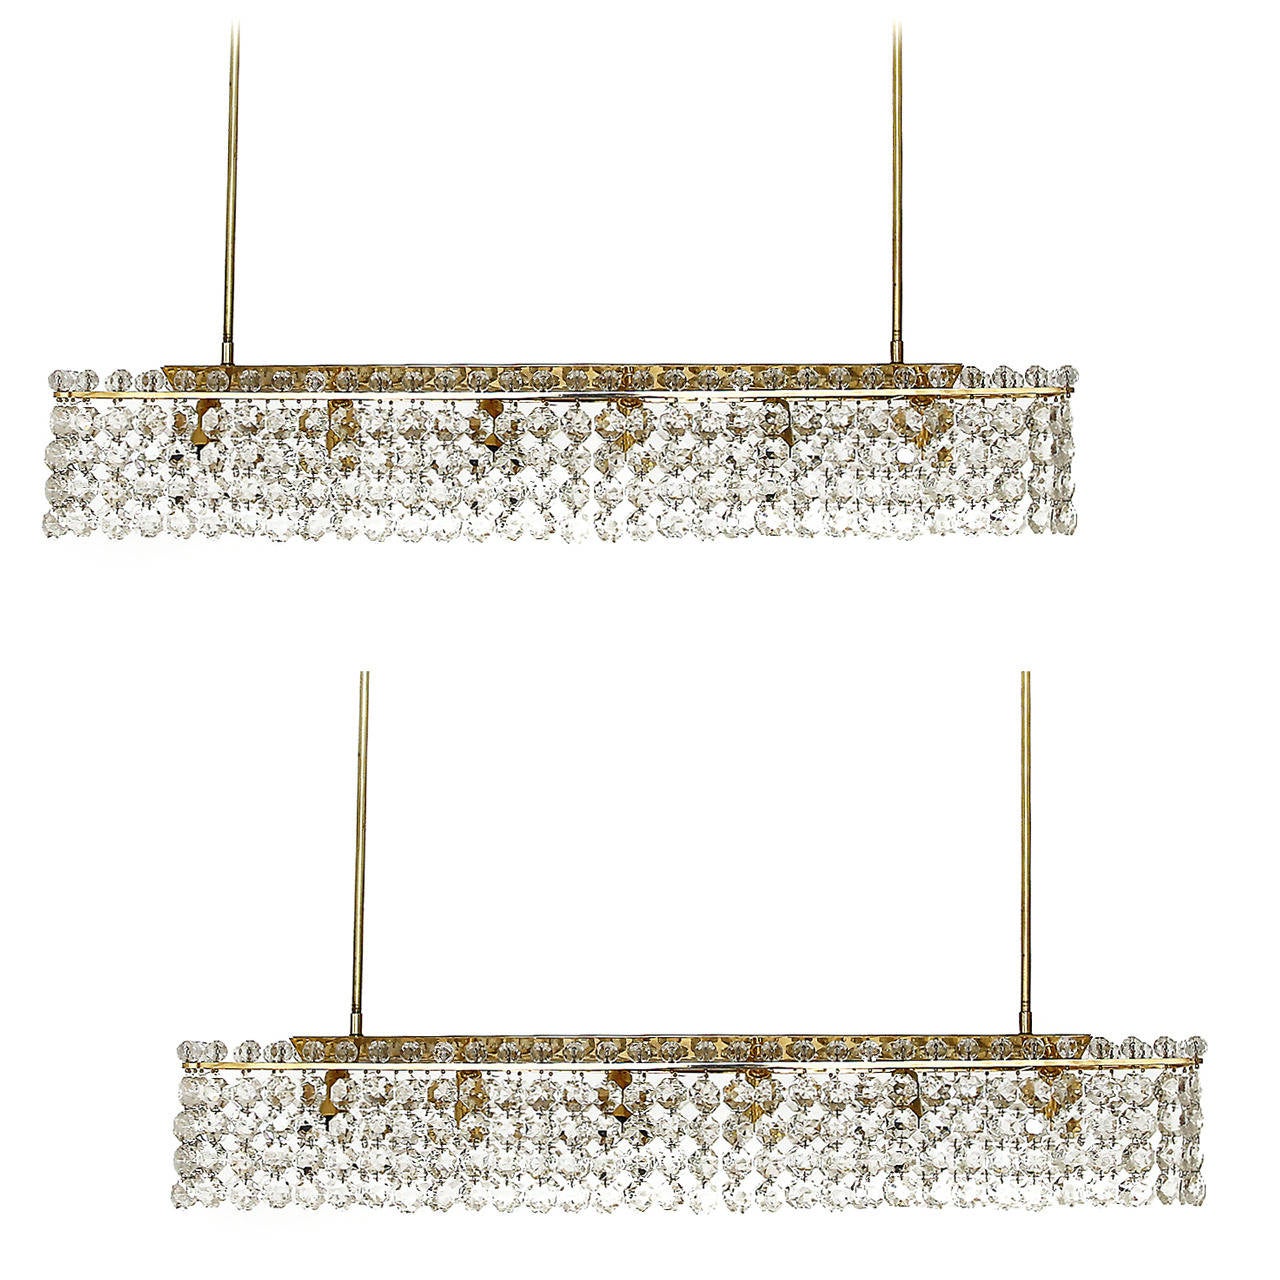 Deux grands lustres / pendentifs de haute qualité par Bakalowits & Soehne, Autriche, Vienne, années 1960. Ces lampes glamour sont fabriquées à partir de cadres en laiton décorés de cristaux de verre en forme de diamant taillés à la main. De grandes